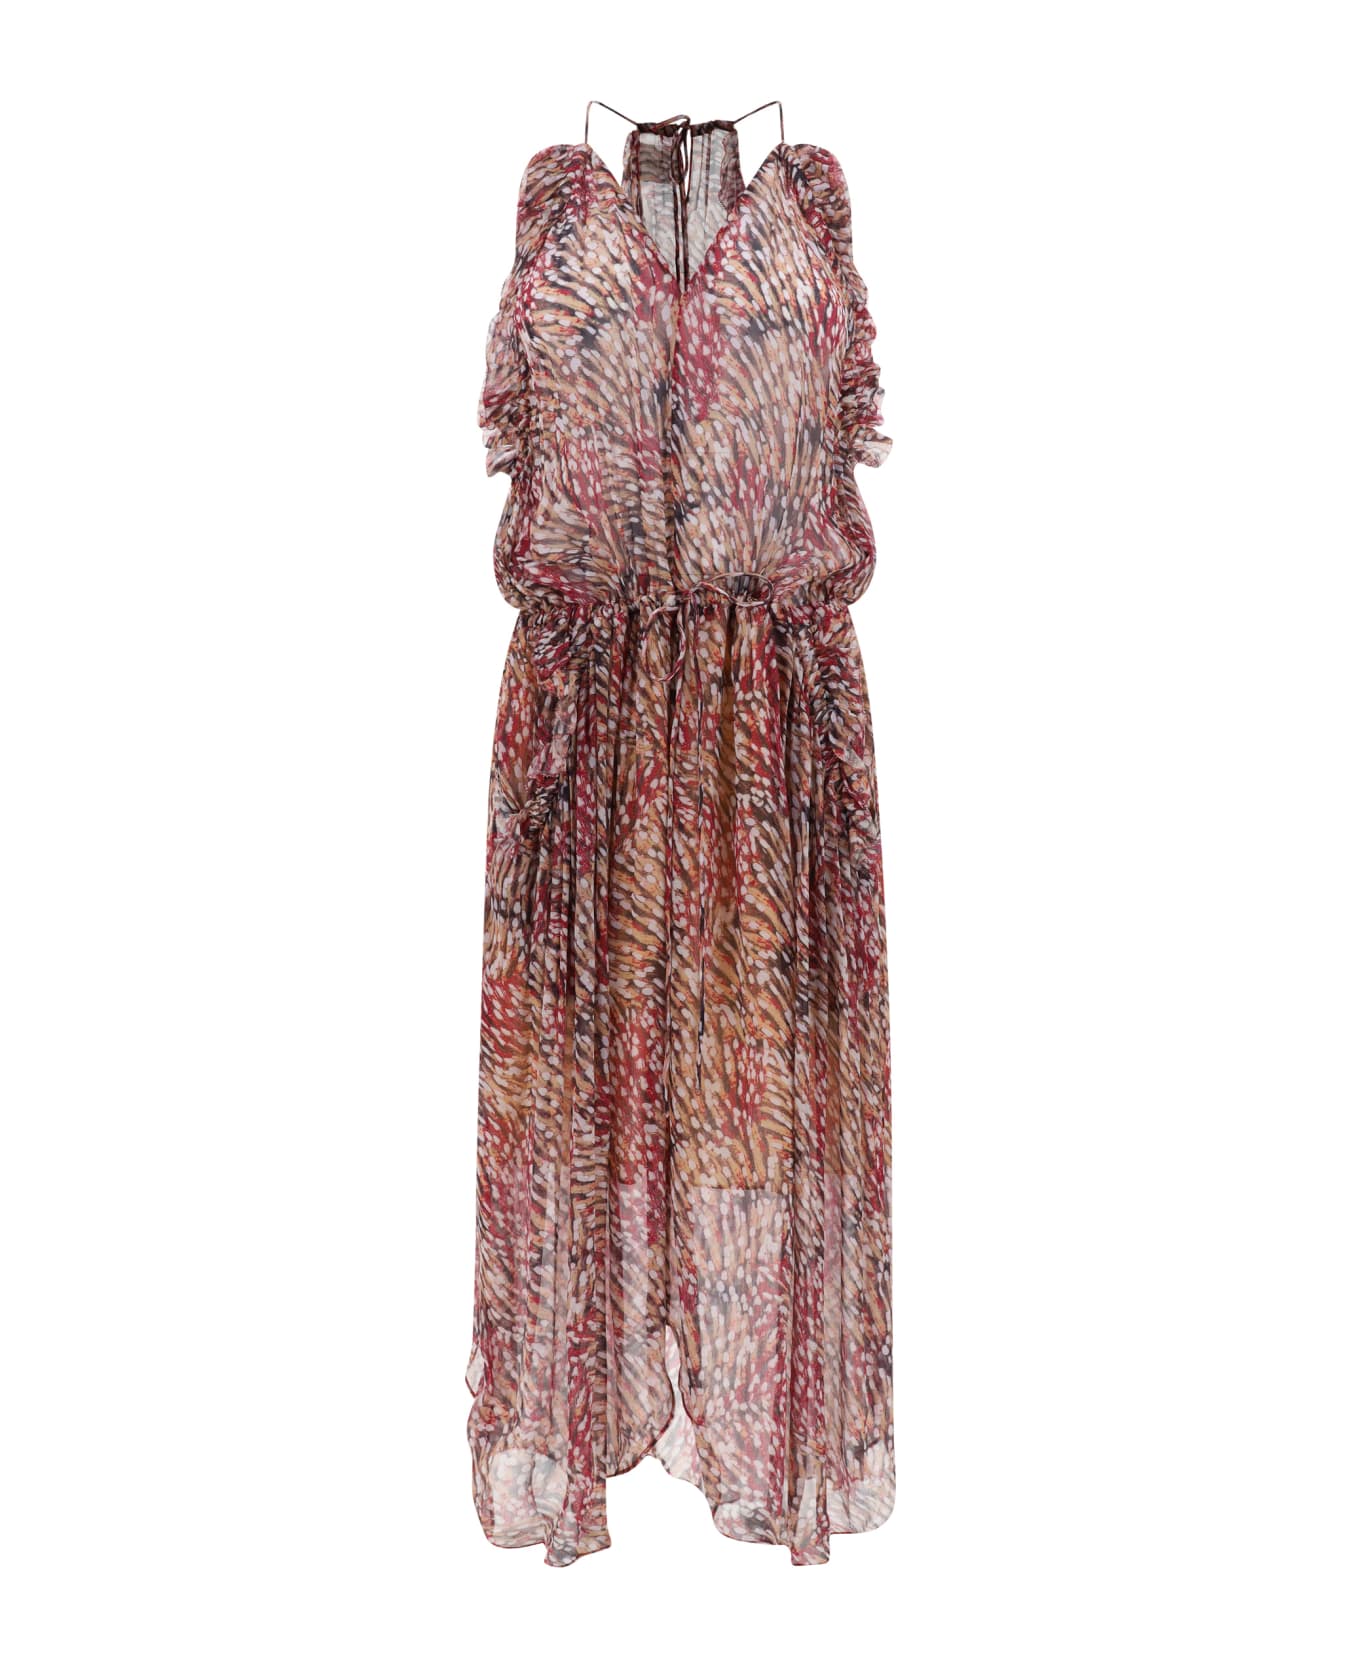 Marant Étoile Fadelo Long Dress - Raspberry